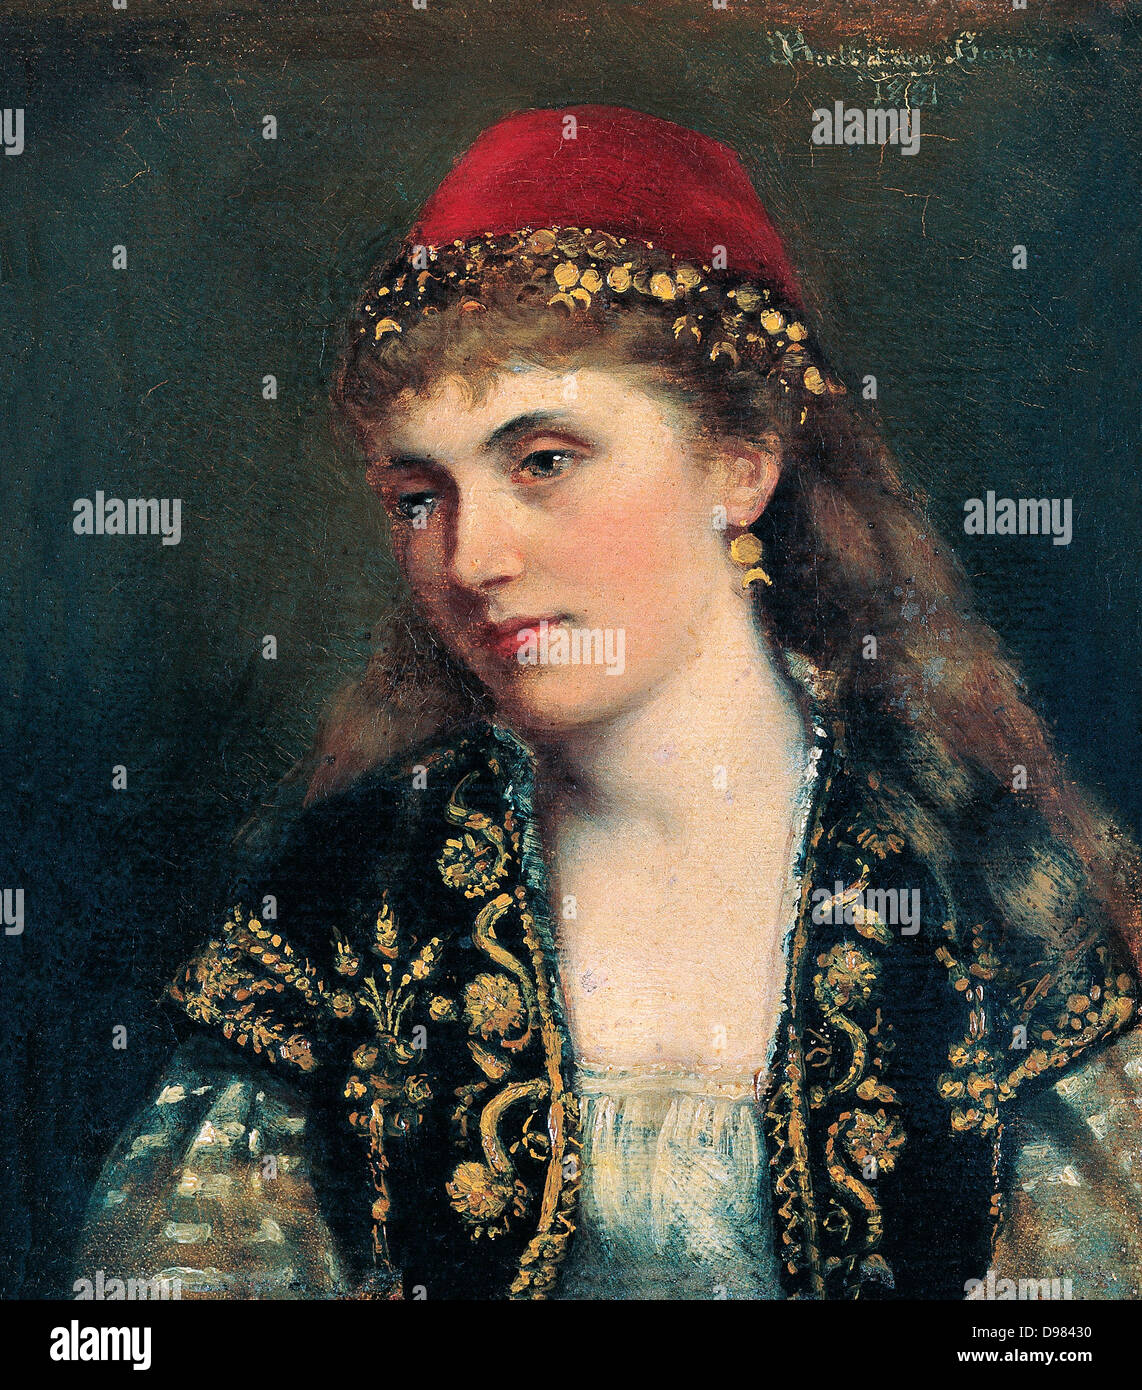 Bertha von Bayer, Bildnis einer Frau. des 19. Jahrhunderts. Öl auf Leinwand. Pera Museum, Istanbul. Stockfoto